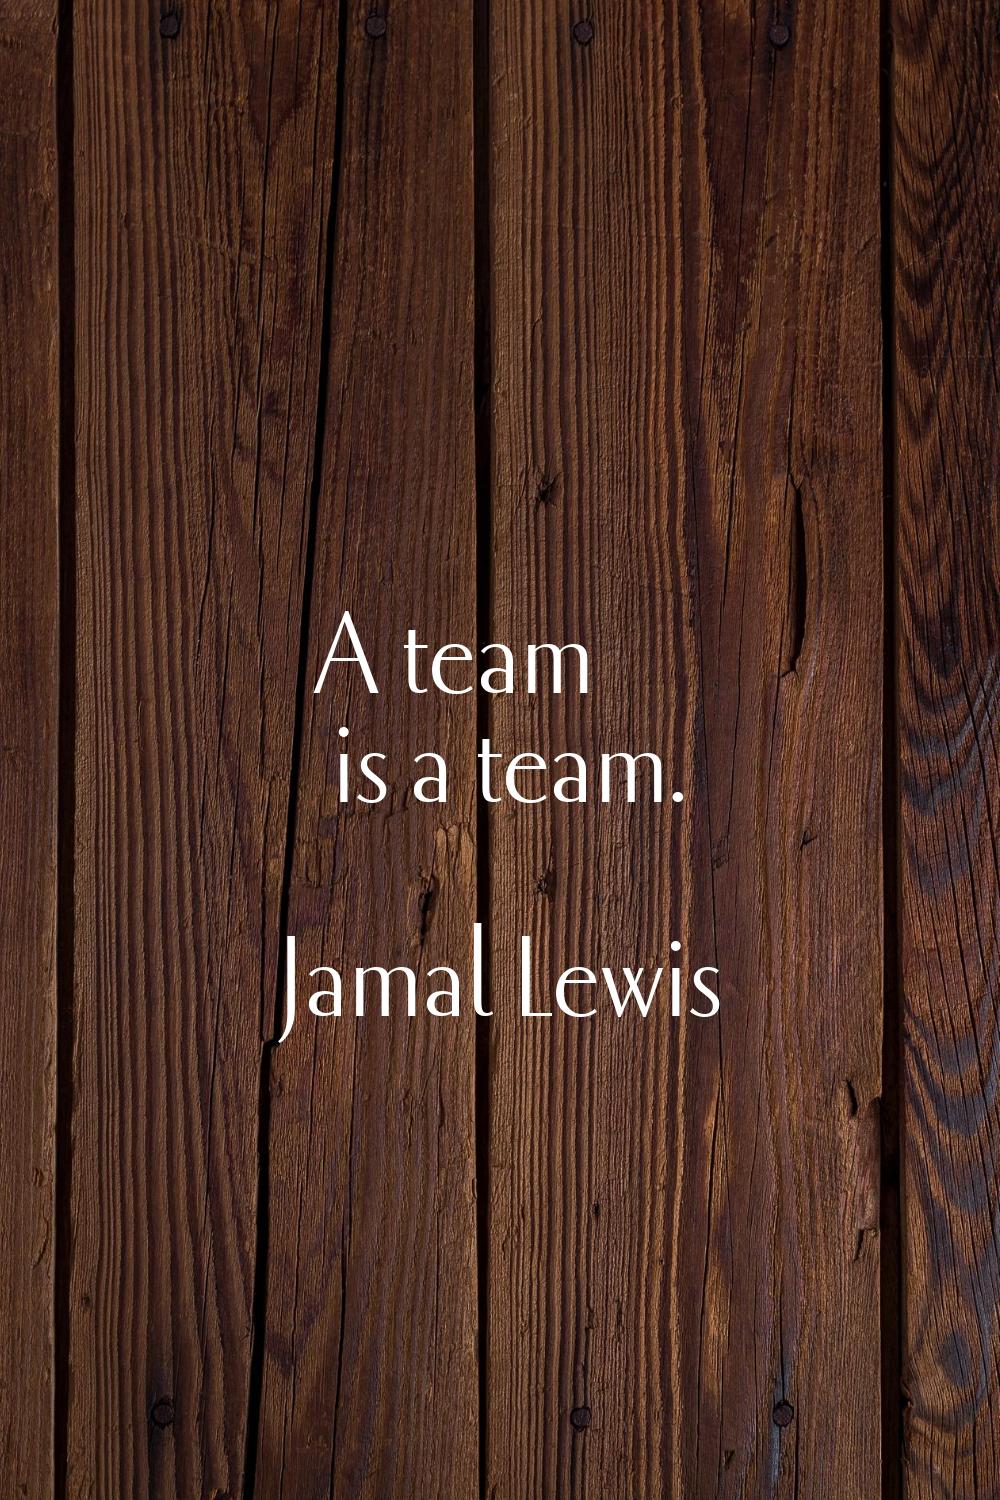 A team is a team.